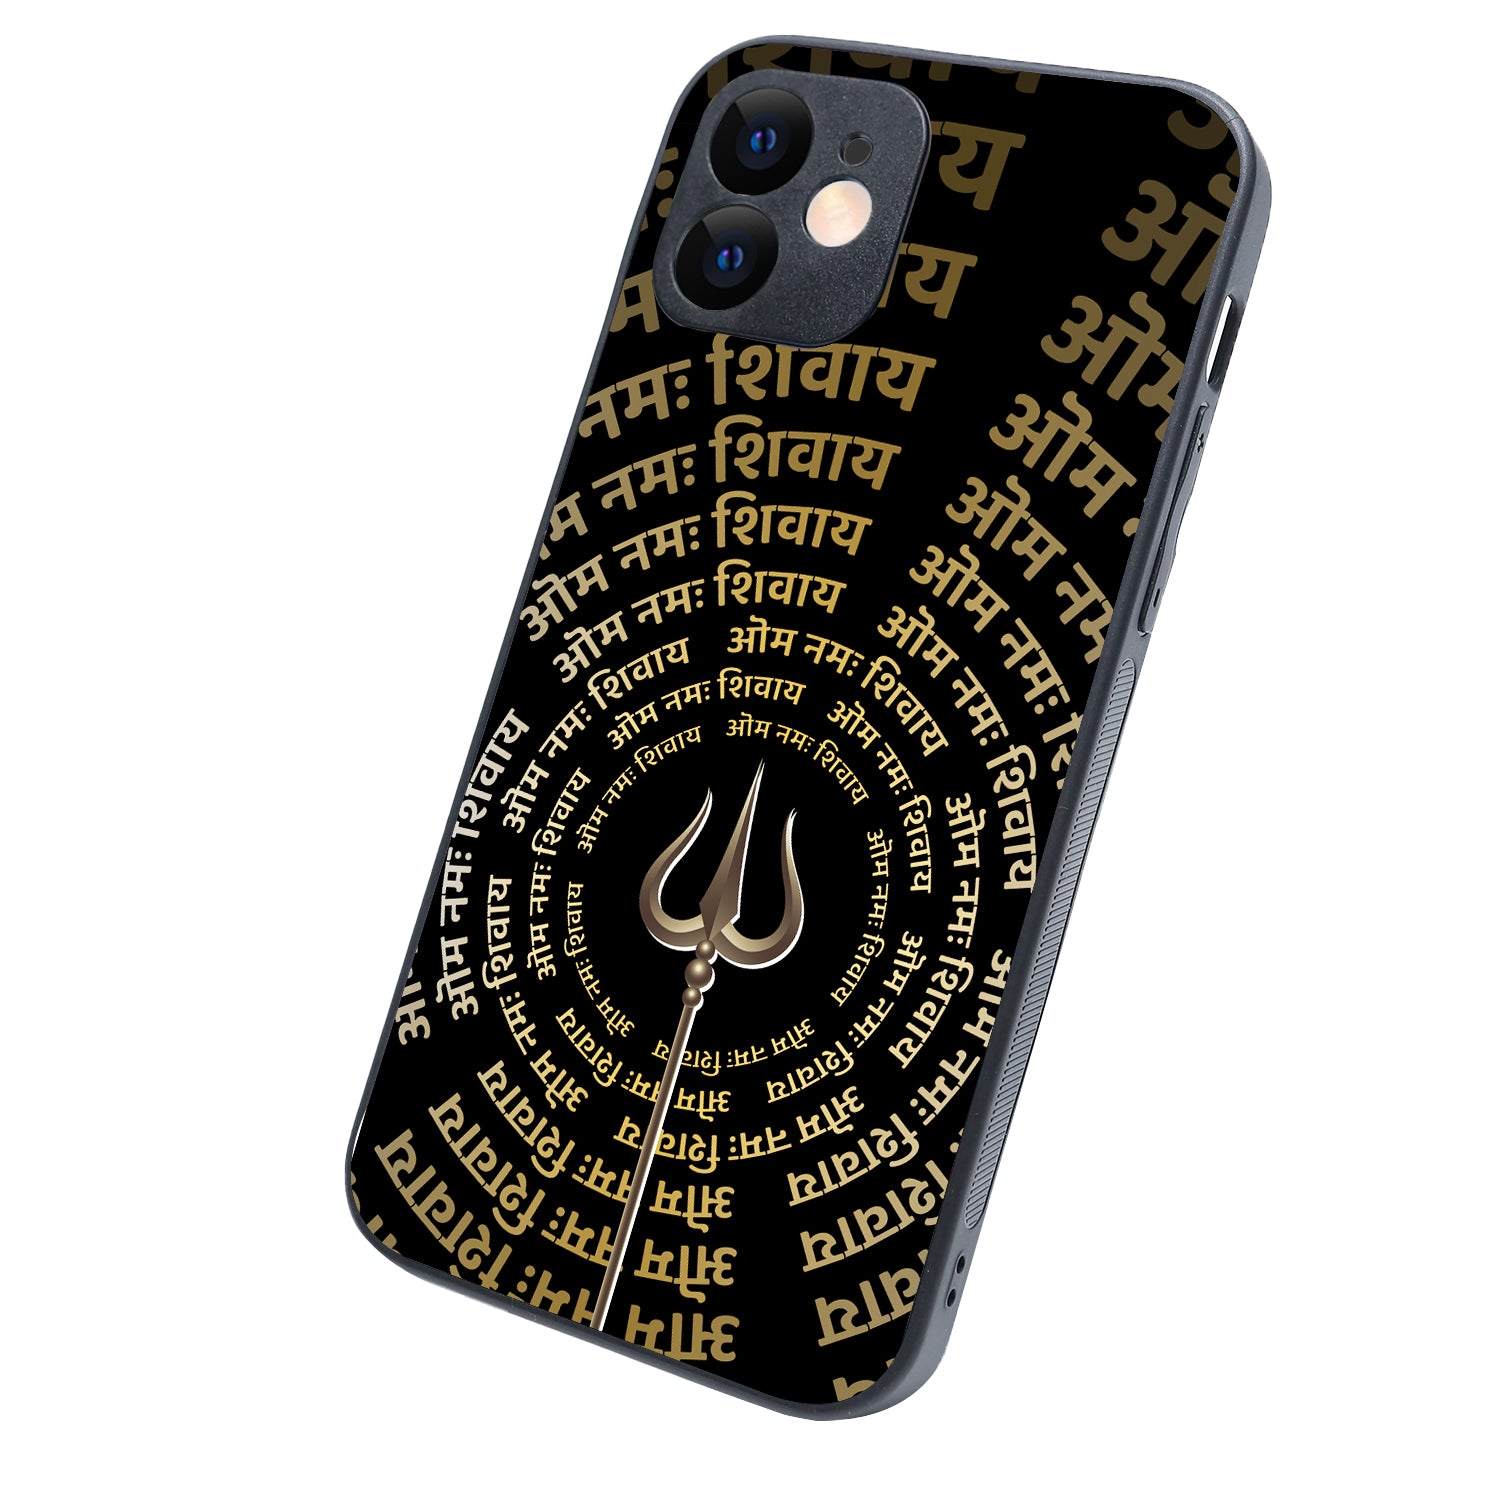 Om Namah Shivay Religious iPhone 12 Case